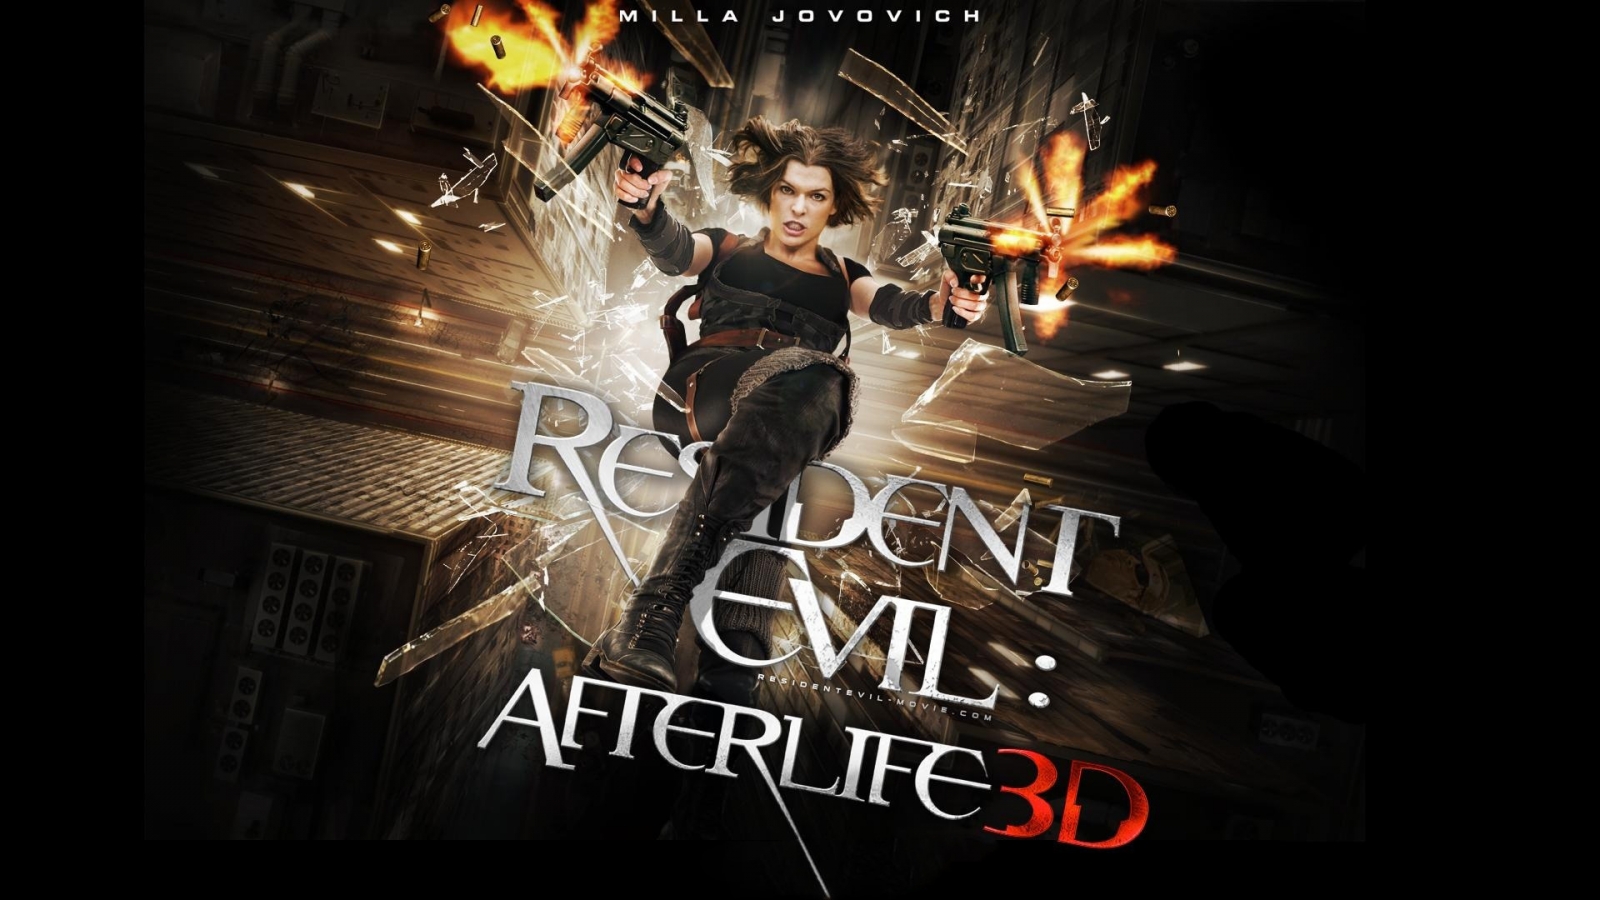 Resident Evil Afterlife 3D Poster for 1600 x 900 HDTV resolution